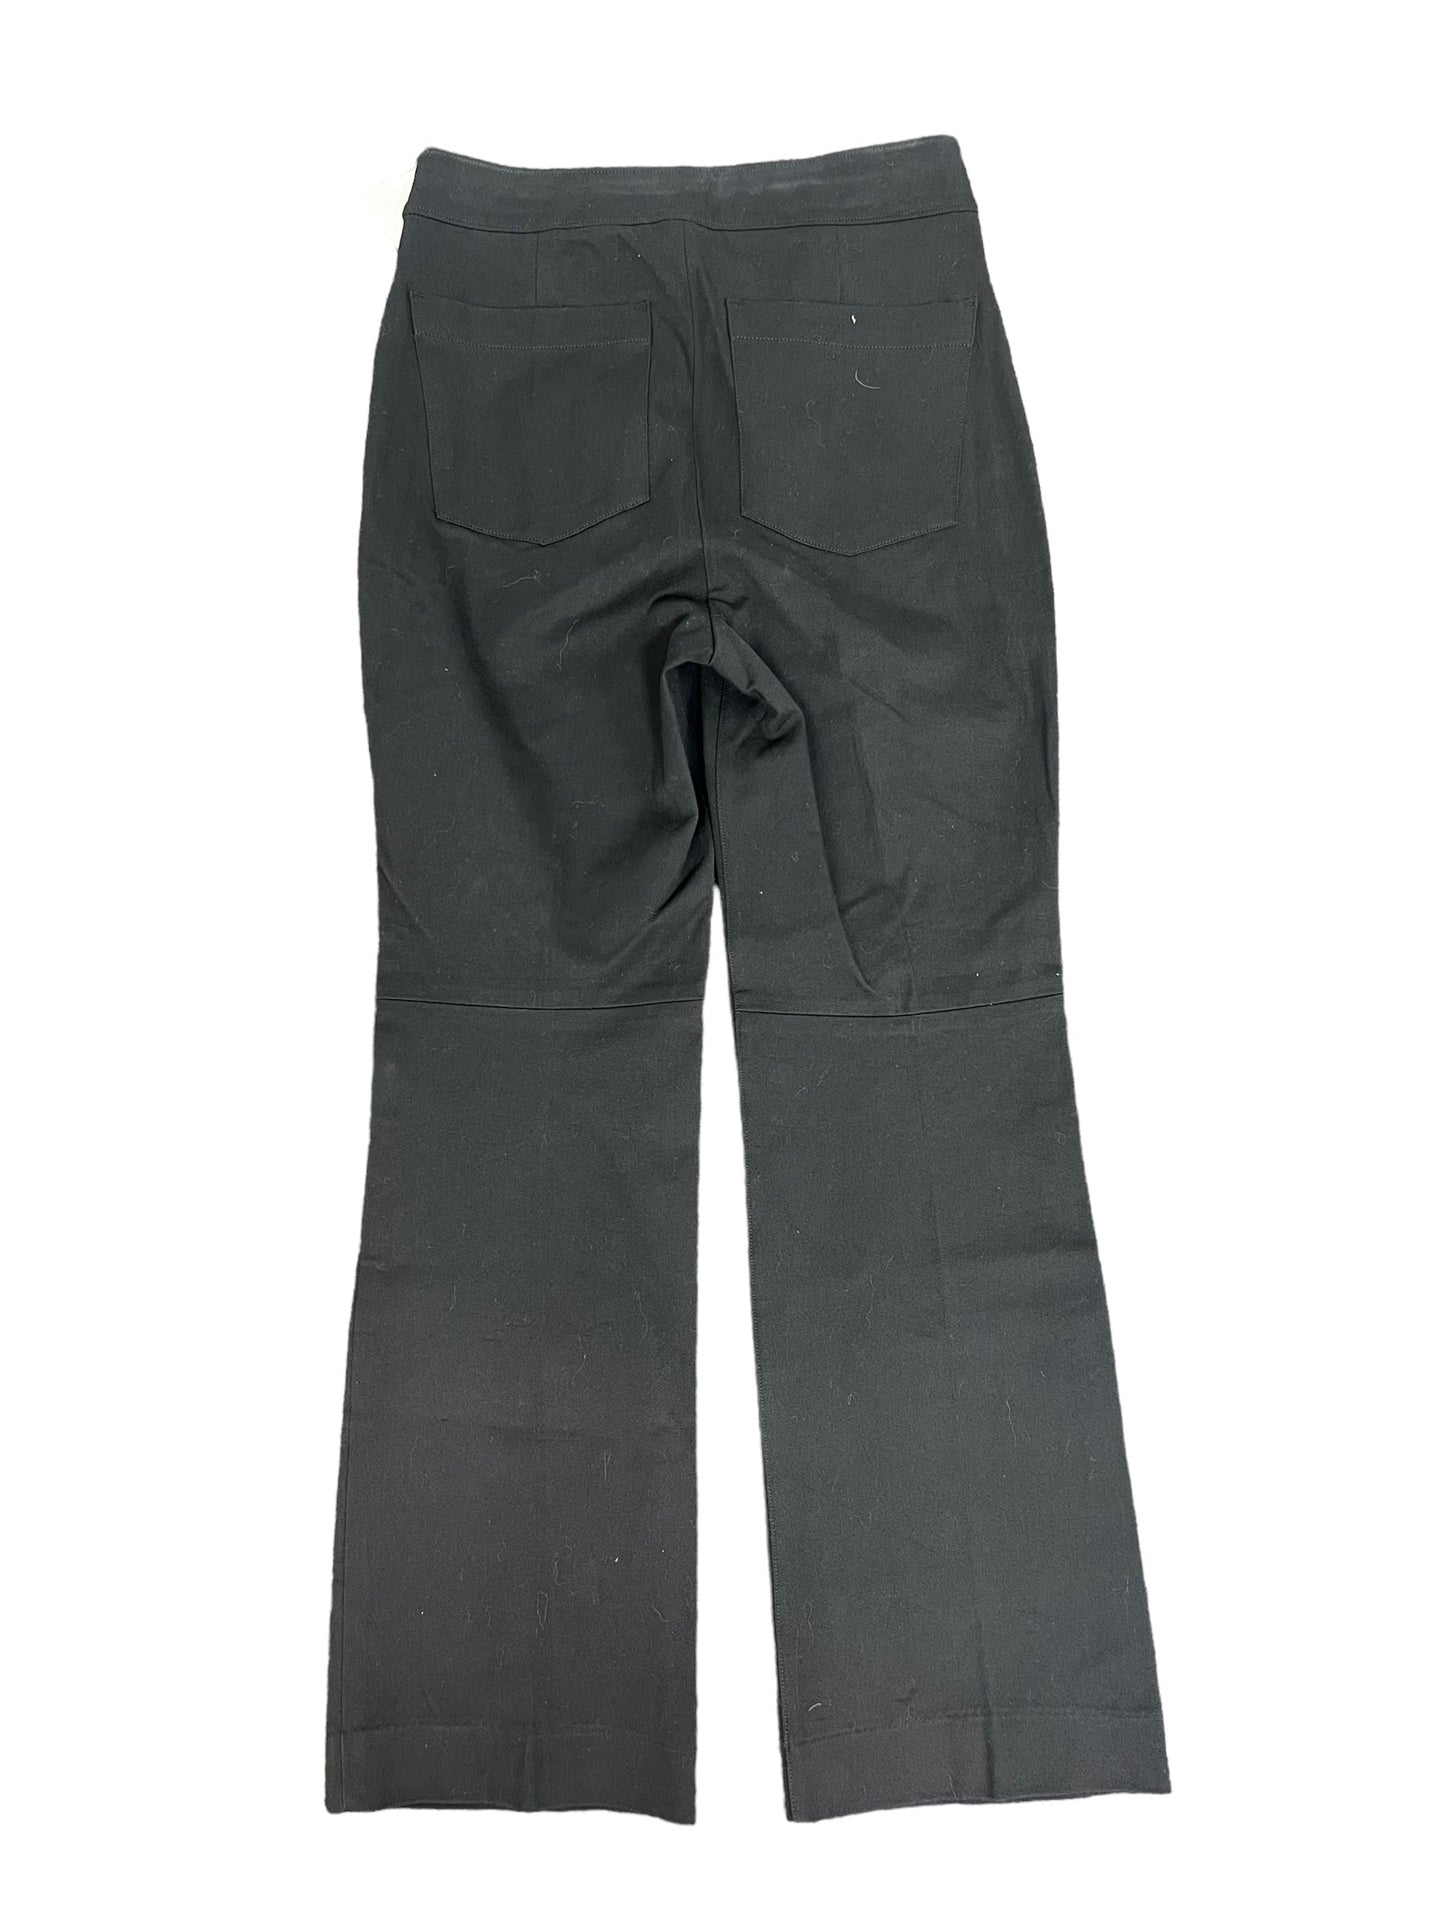 Black Pants Dress Spanx, Size S